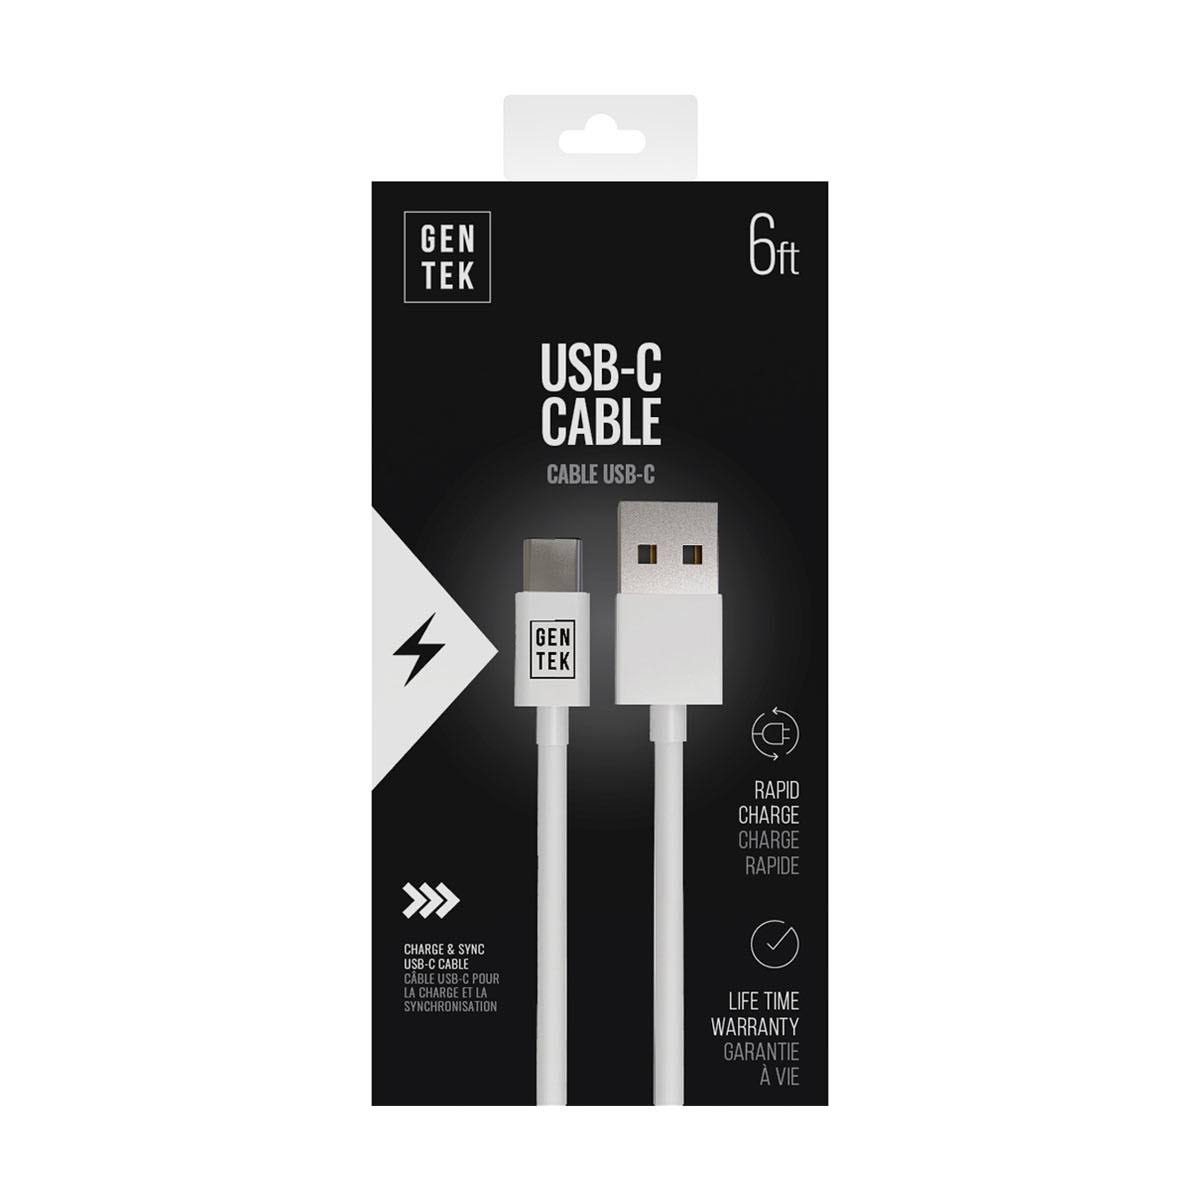 Gentek White USB-C Cable, 6 ft.